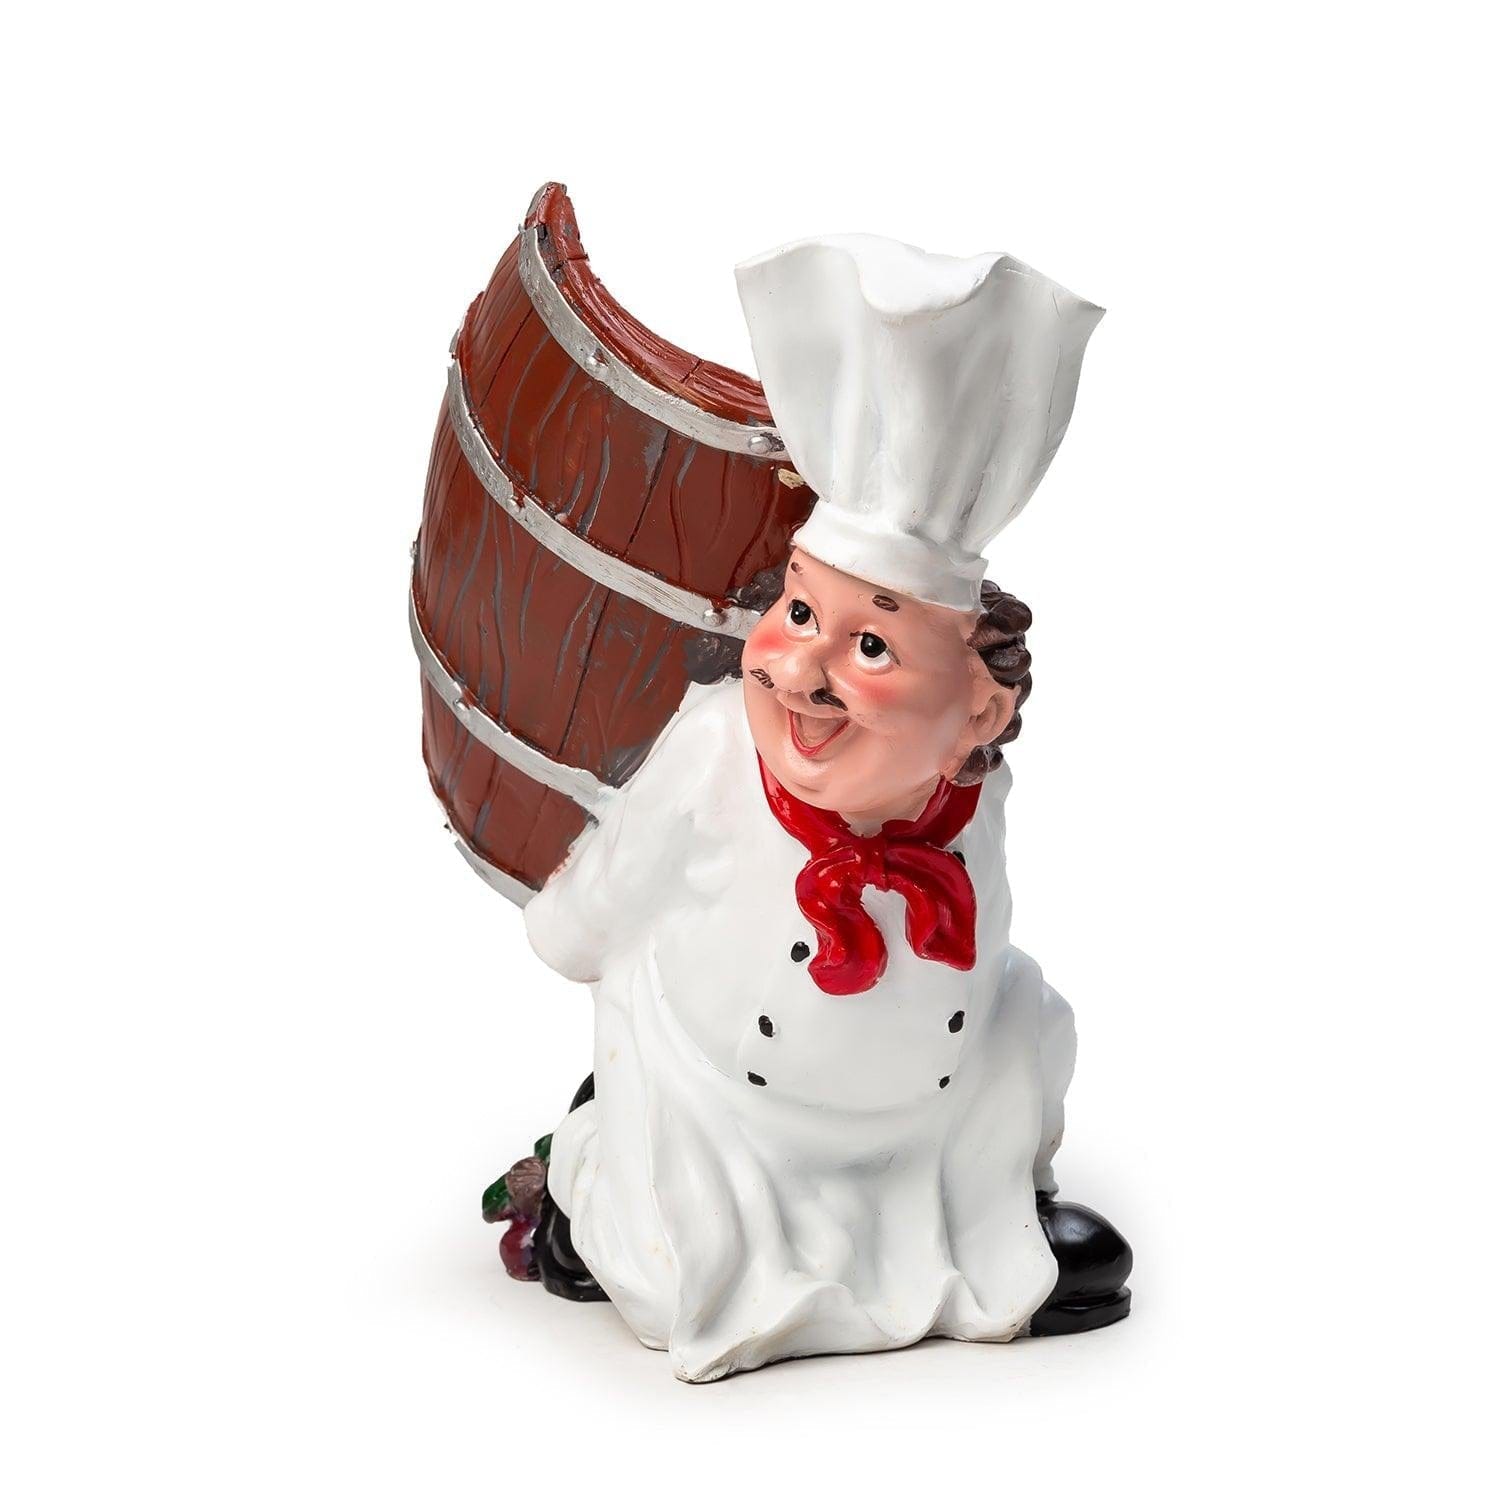 Foodie Chef Figurine Resin Bottle Holder Set (Barrel on Back)